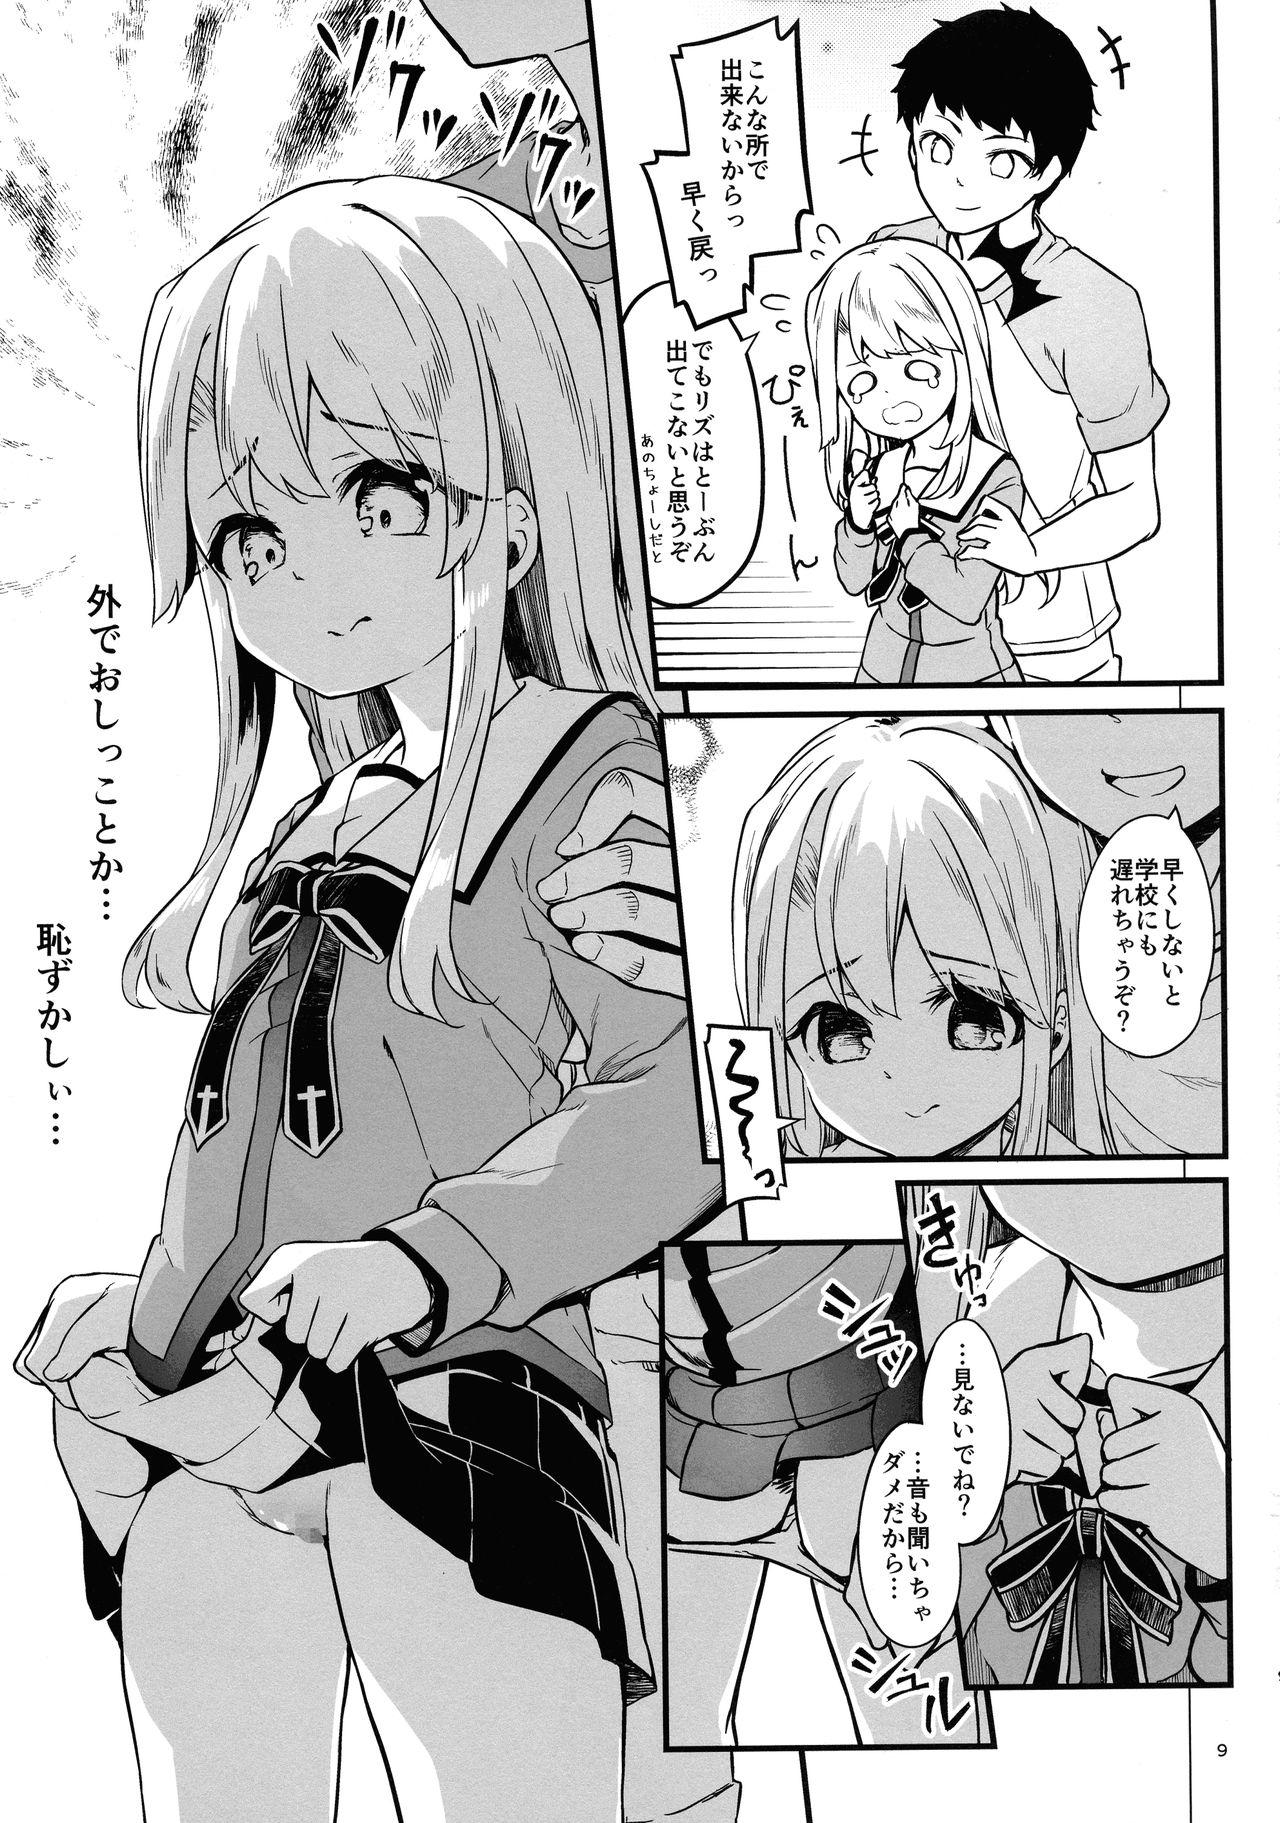 Buttplug Illyasviel no Onii-chan wa Isogashii - Fate kaleid liner prisma illya Art - Page 9